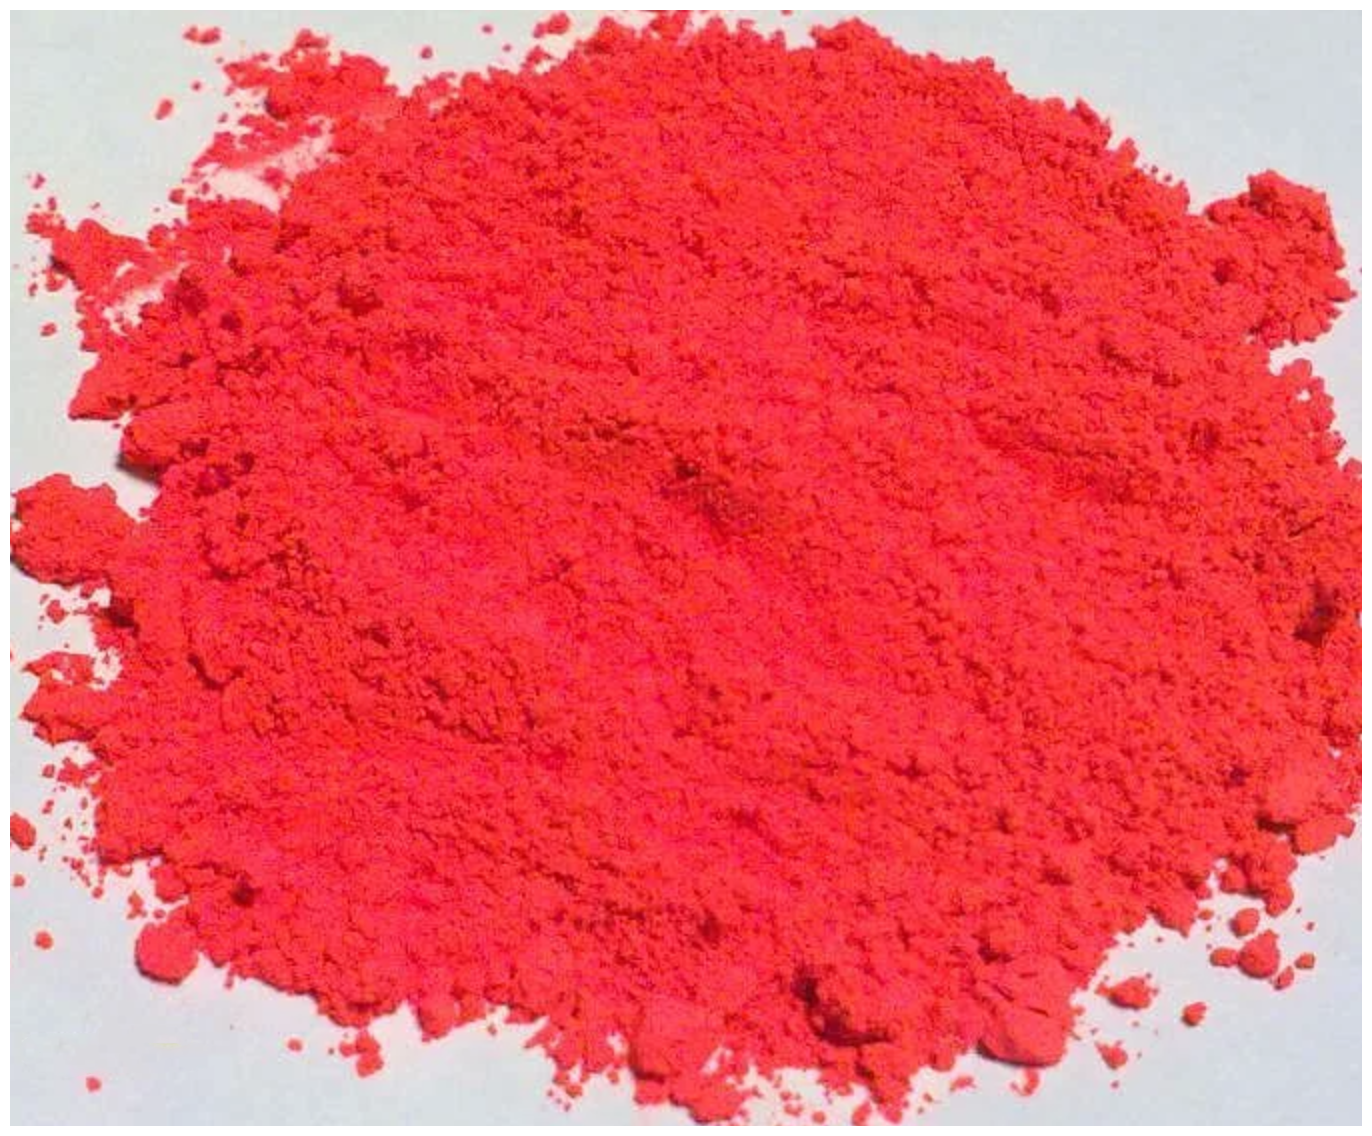 Неоновый флуоресцентный пигмент красный UVR - 100 гр